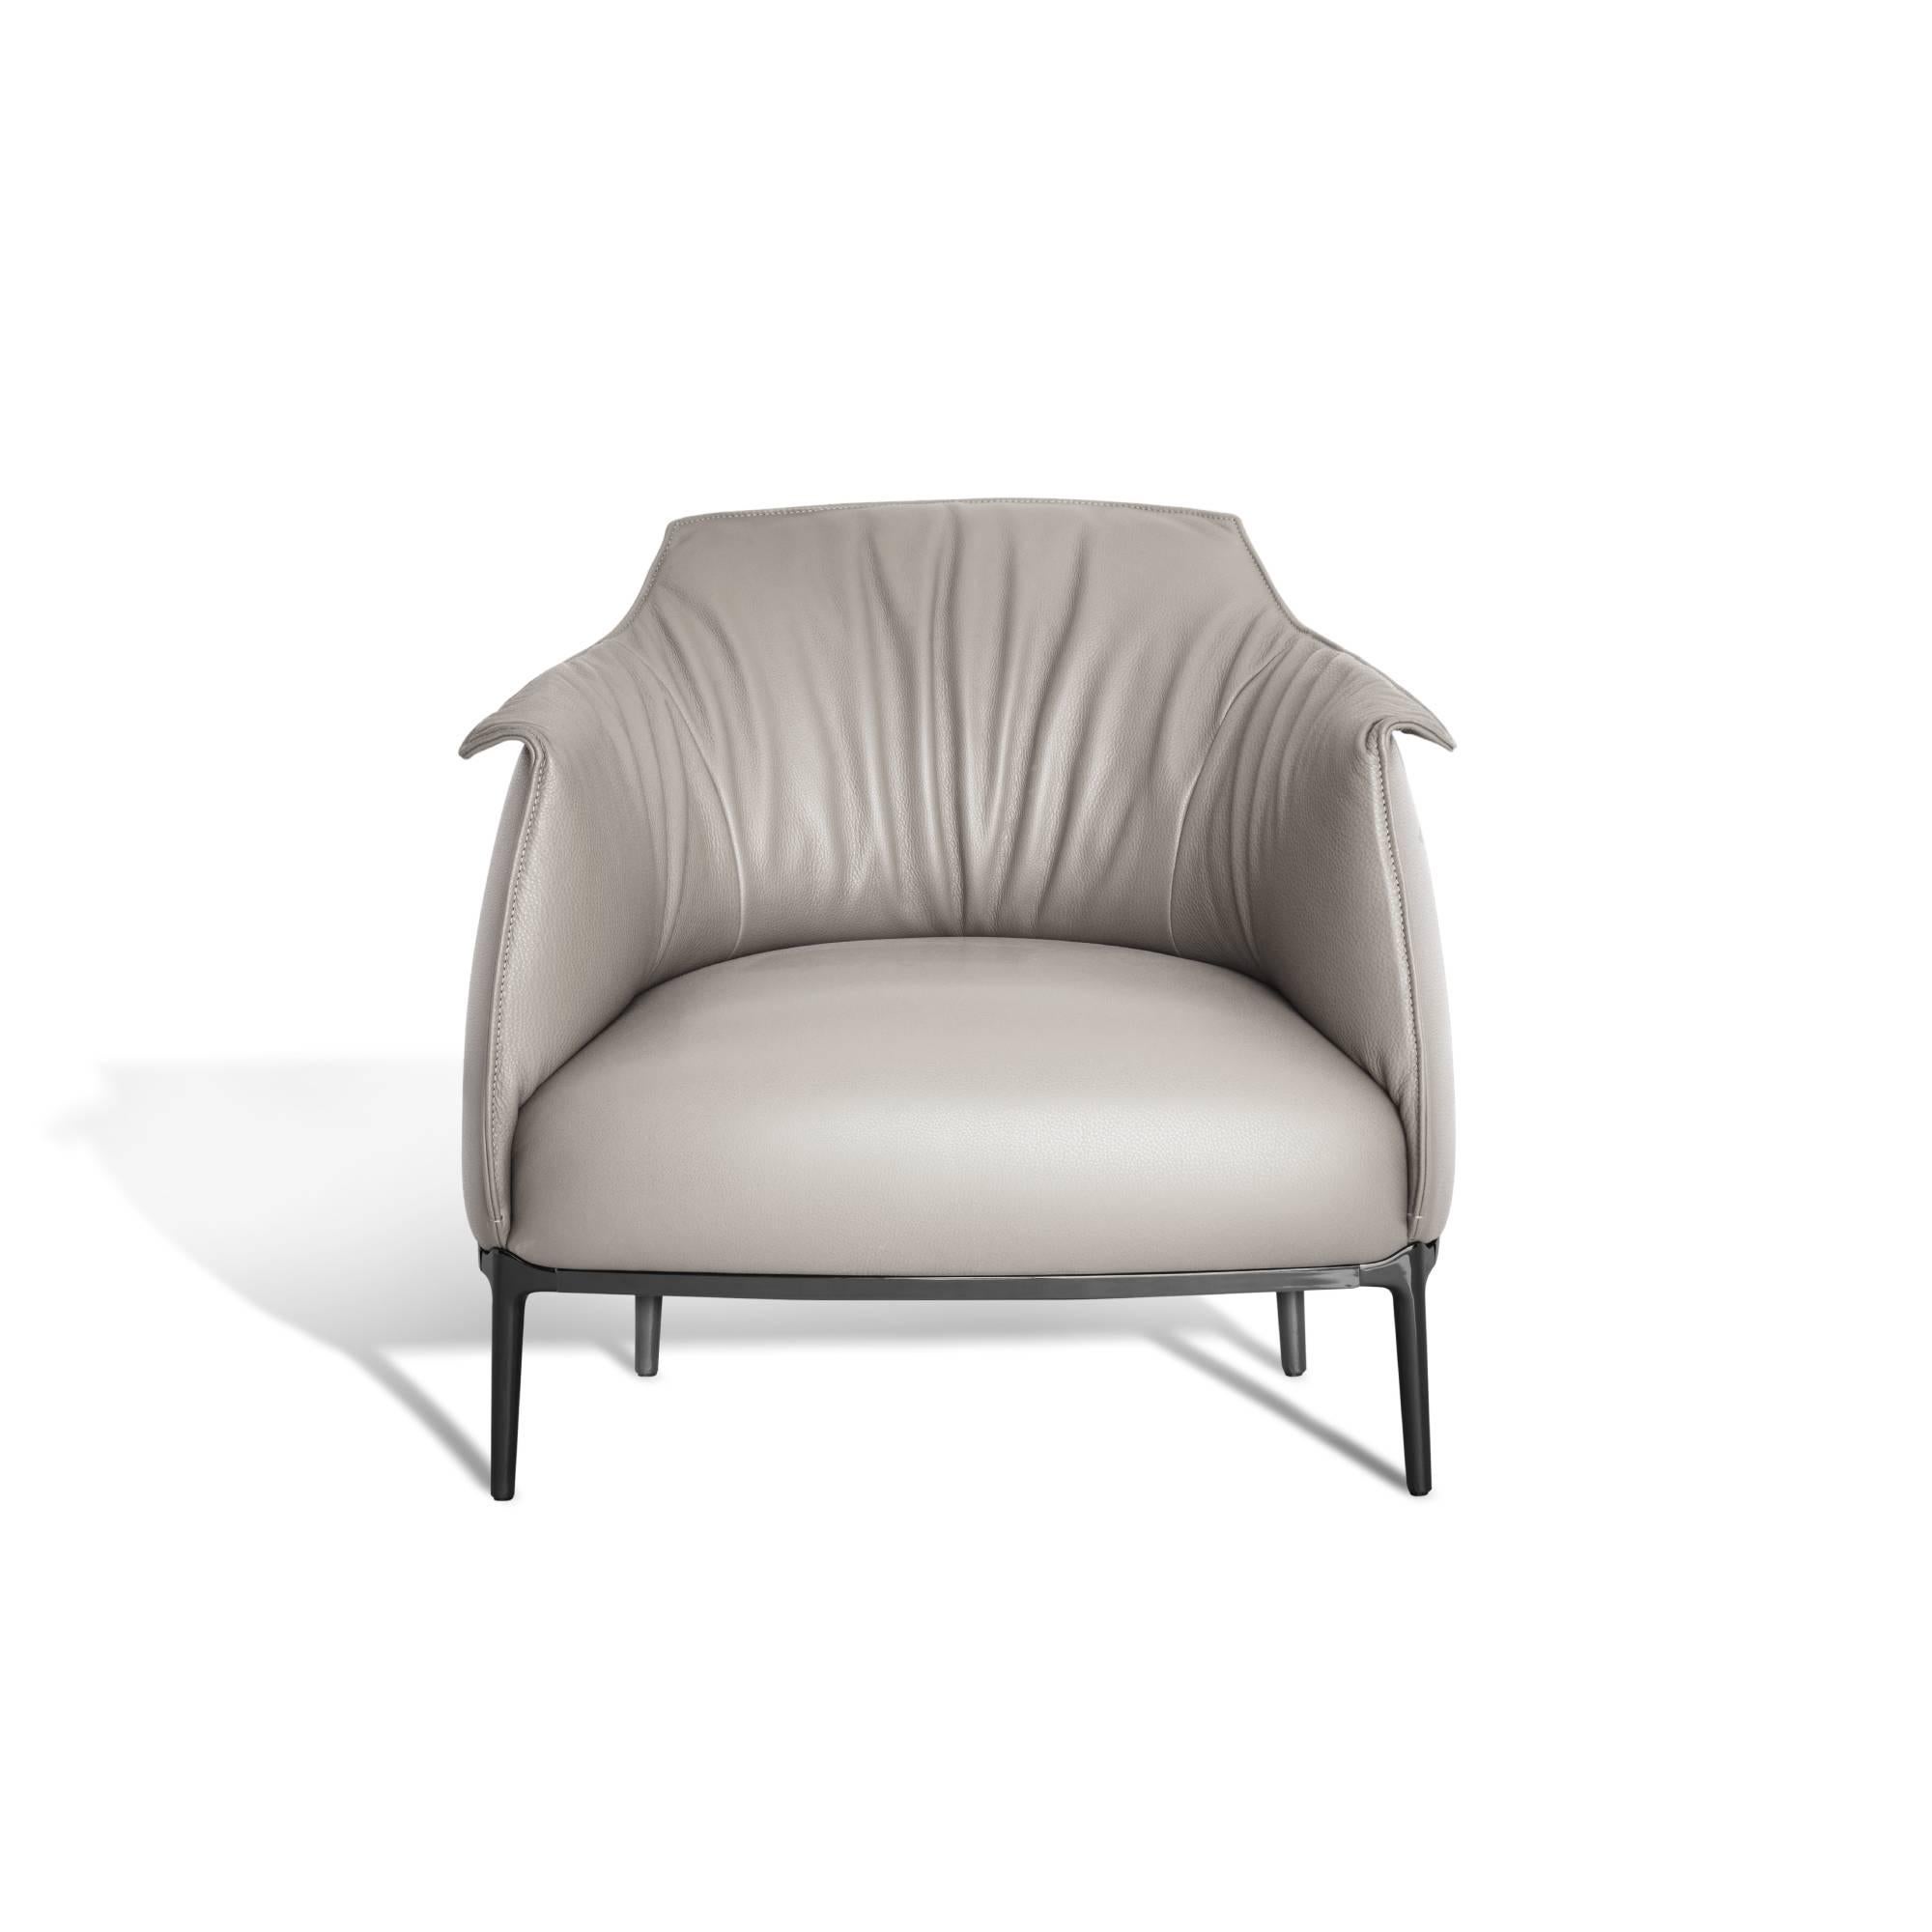 L'Archibald de Jean-Marie Massaud est la combinaison parfaite de la substance et de la forme, les fauteuils et les poufs présentant un design confortable et enveloppant idéal pour la méditation et la relaxation. La largeur et la profondeur de